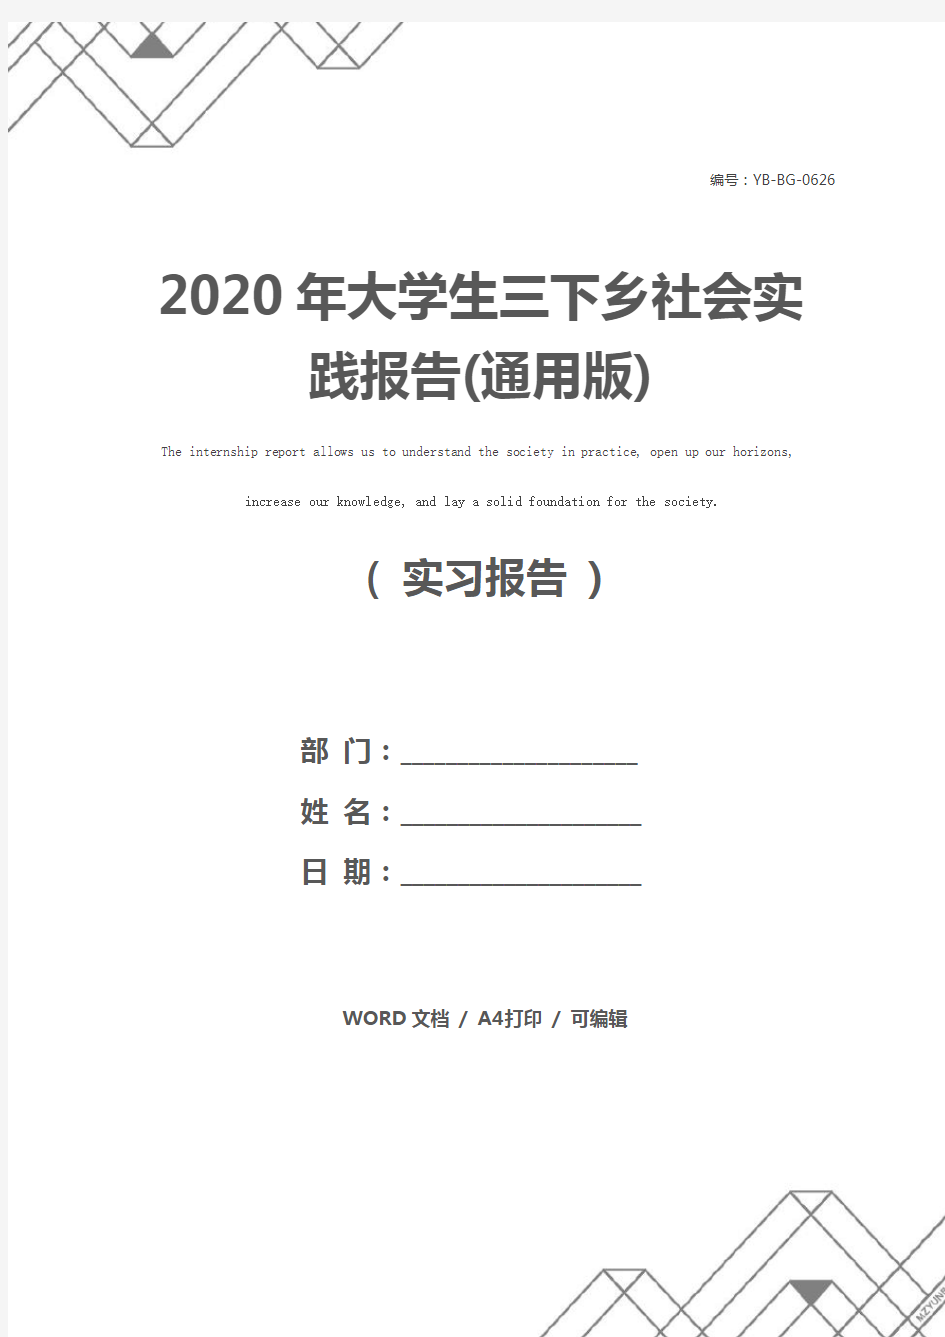 2020年大学生三下乡社会实践报告(通用版)